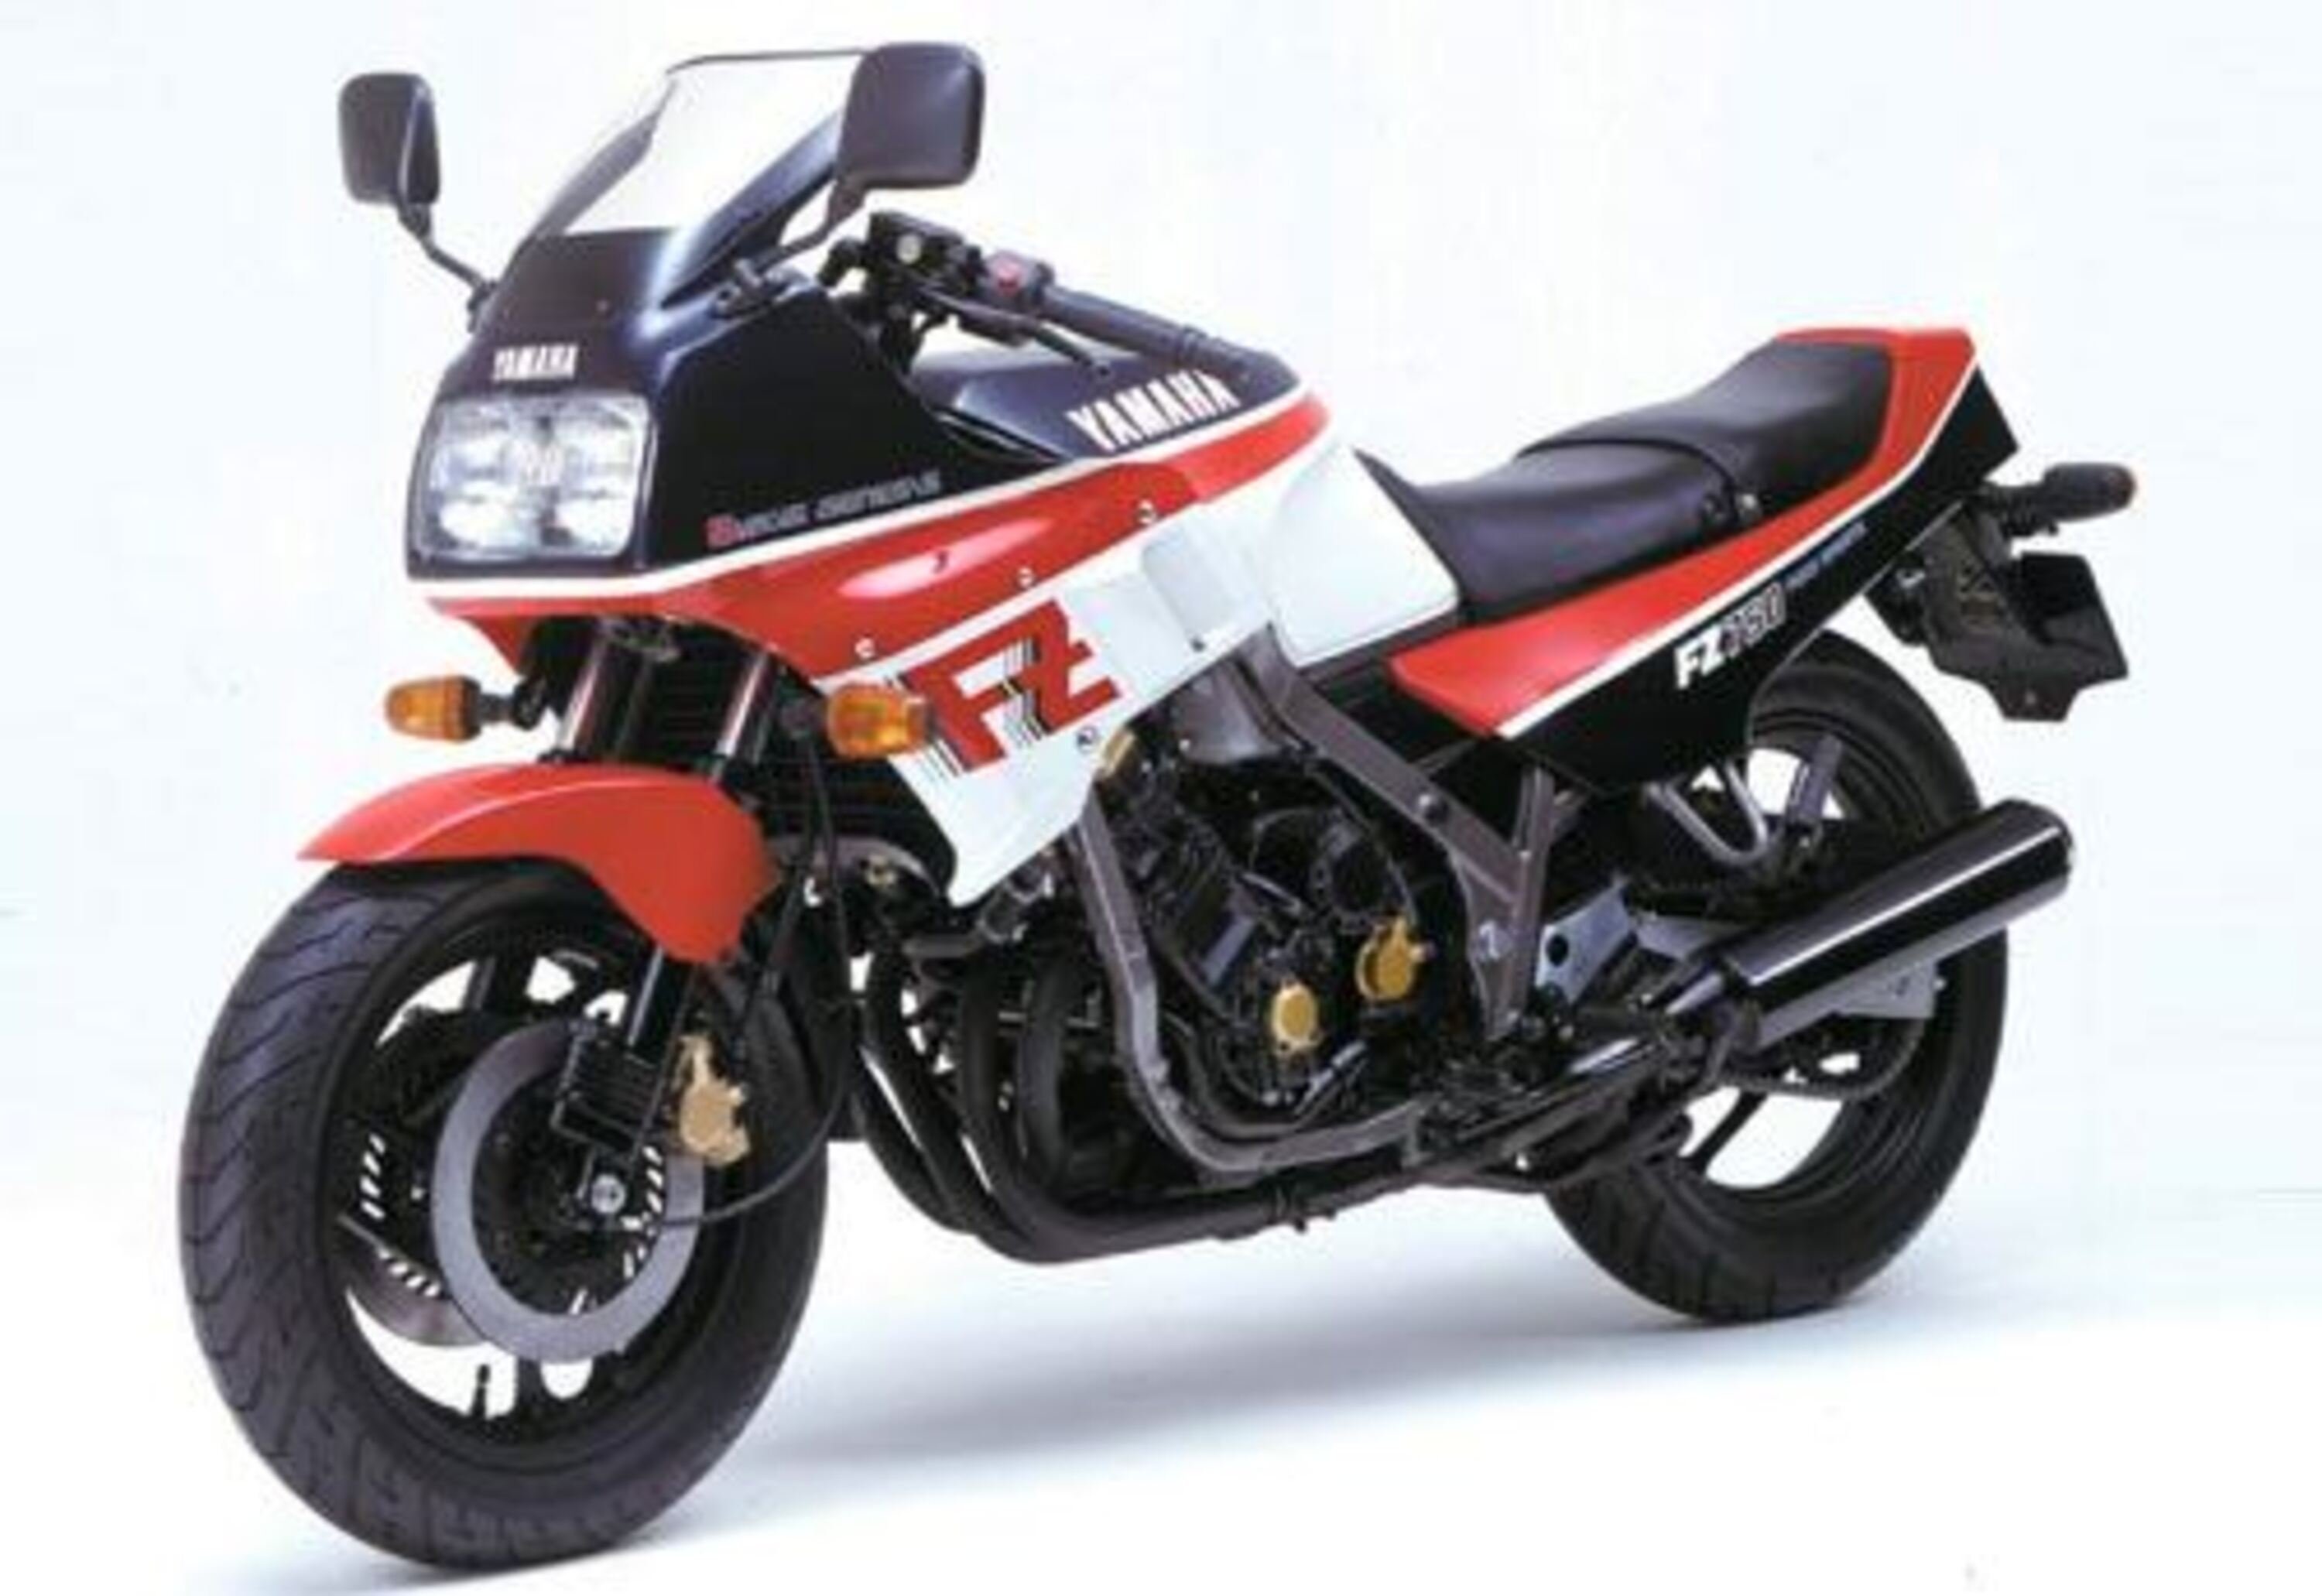 Yamaha FZ 750 FZ 750 (1989 - 92)